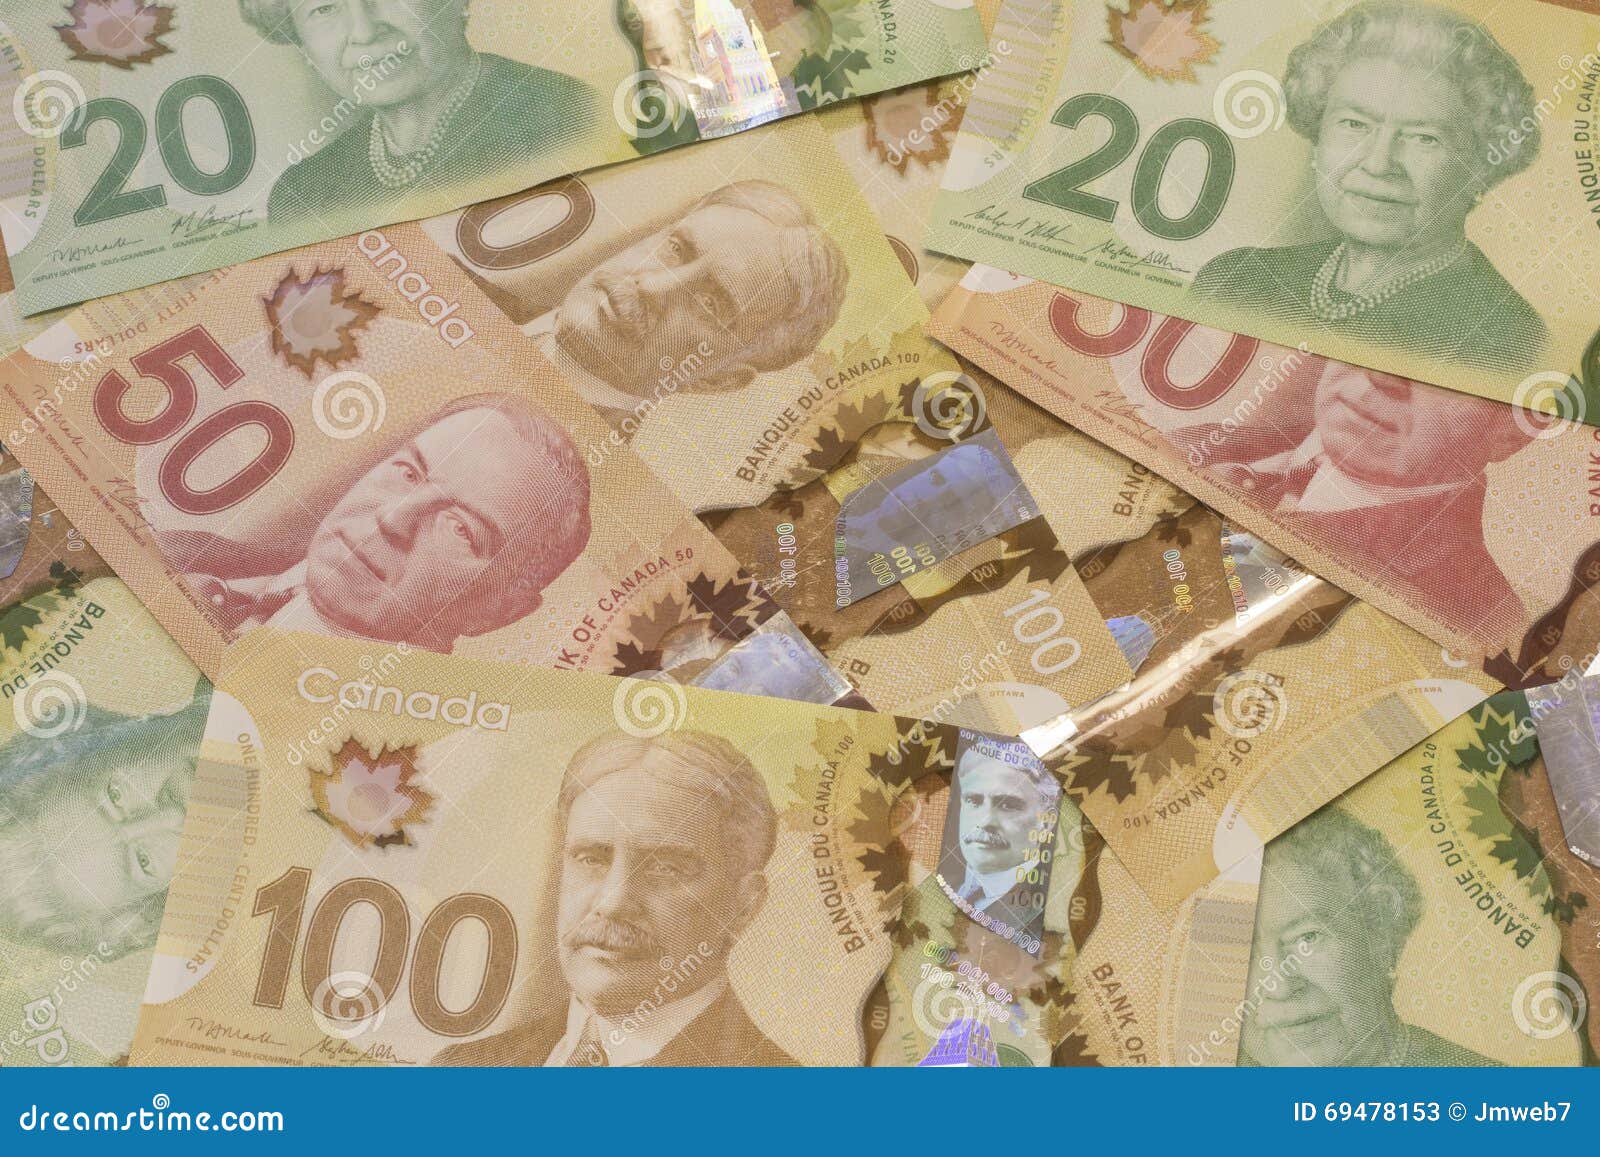 加拿大鈔票-初體驗 @ 斯言彤語-旅行攝 :: 痞客邦